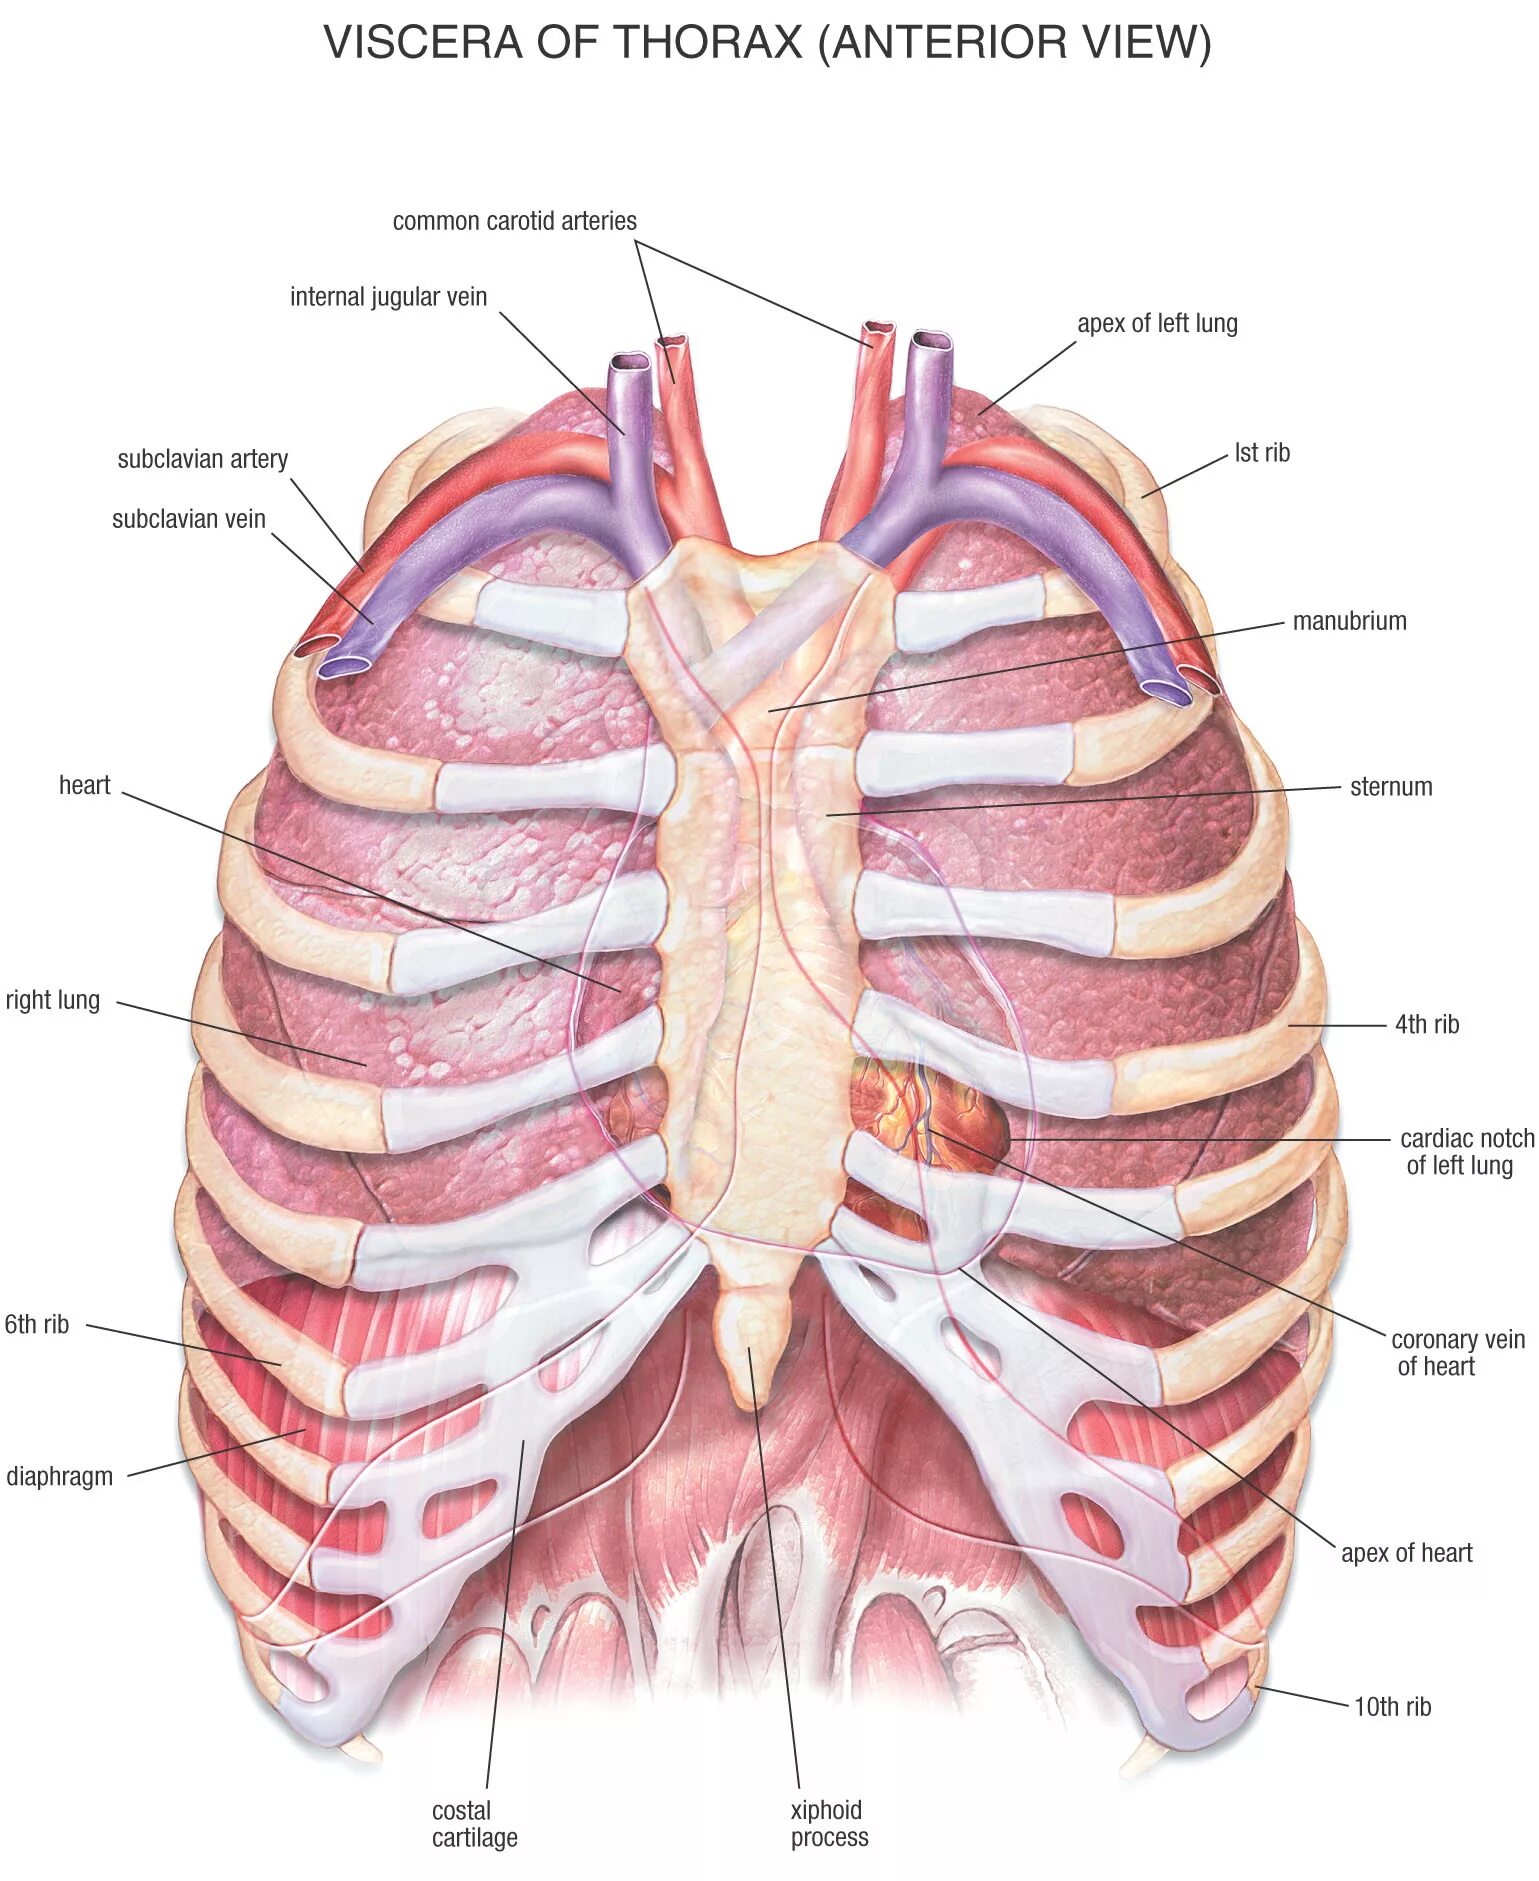 Органы человека с ребрами. Торакс анатомия. Анатомия органов грудной клетки. Анатомия органов грудины человека. Анатомическое строение грудной клетки.